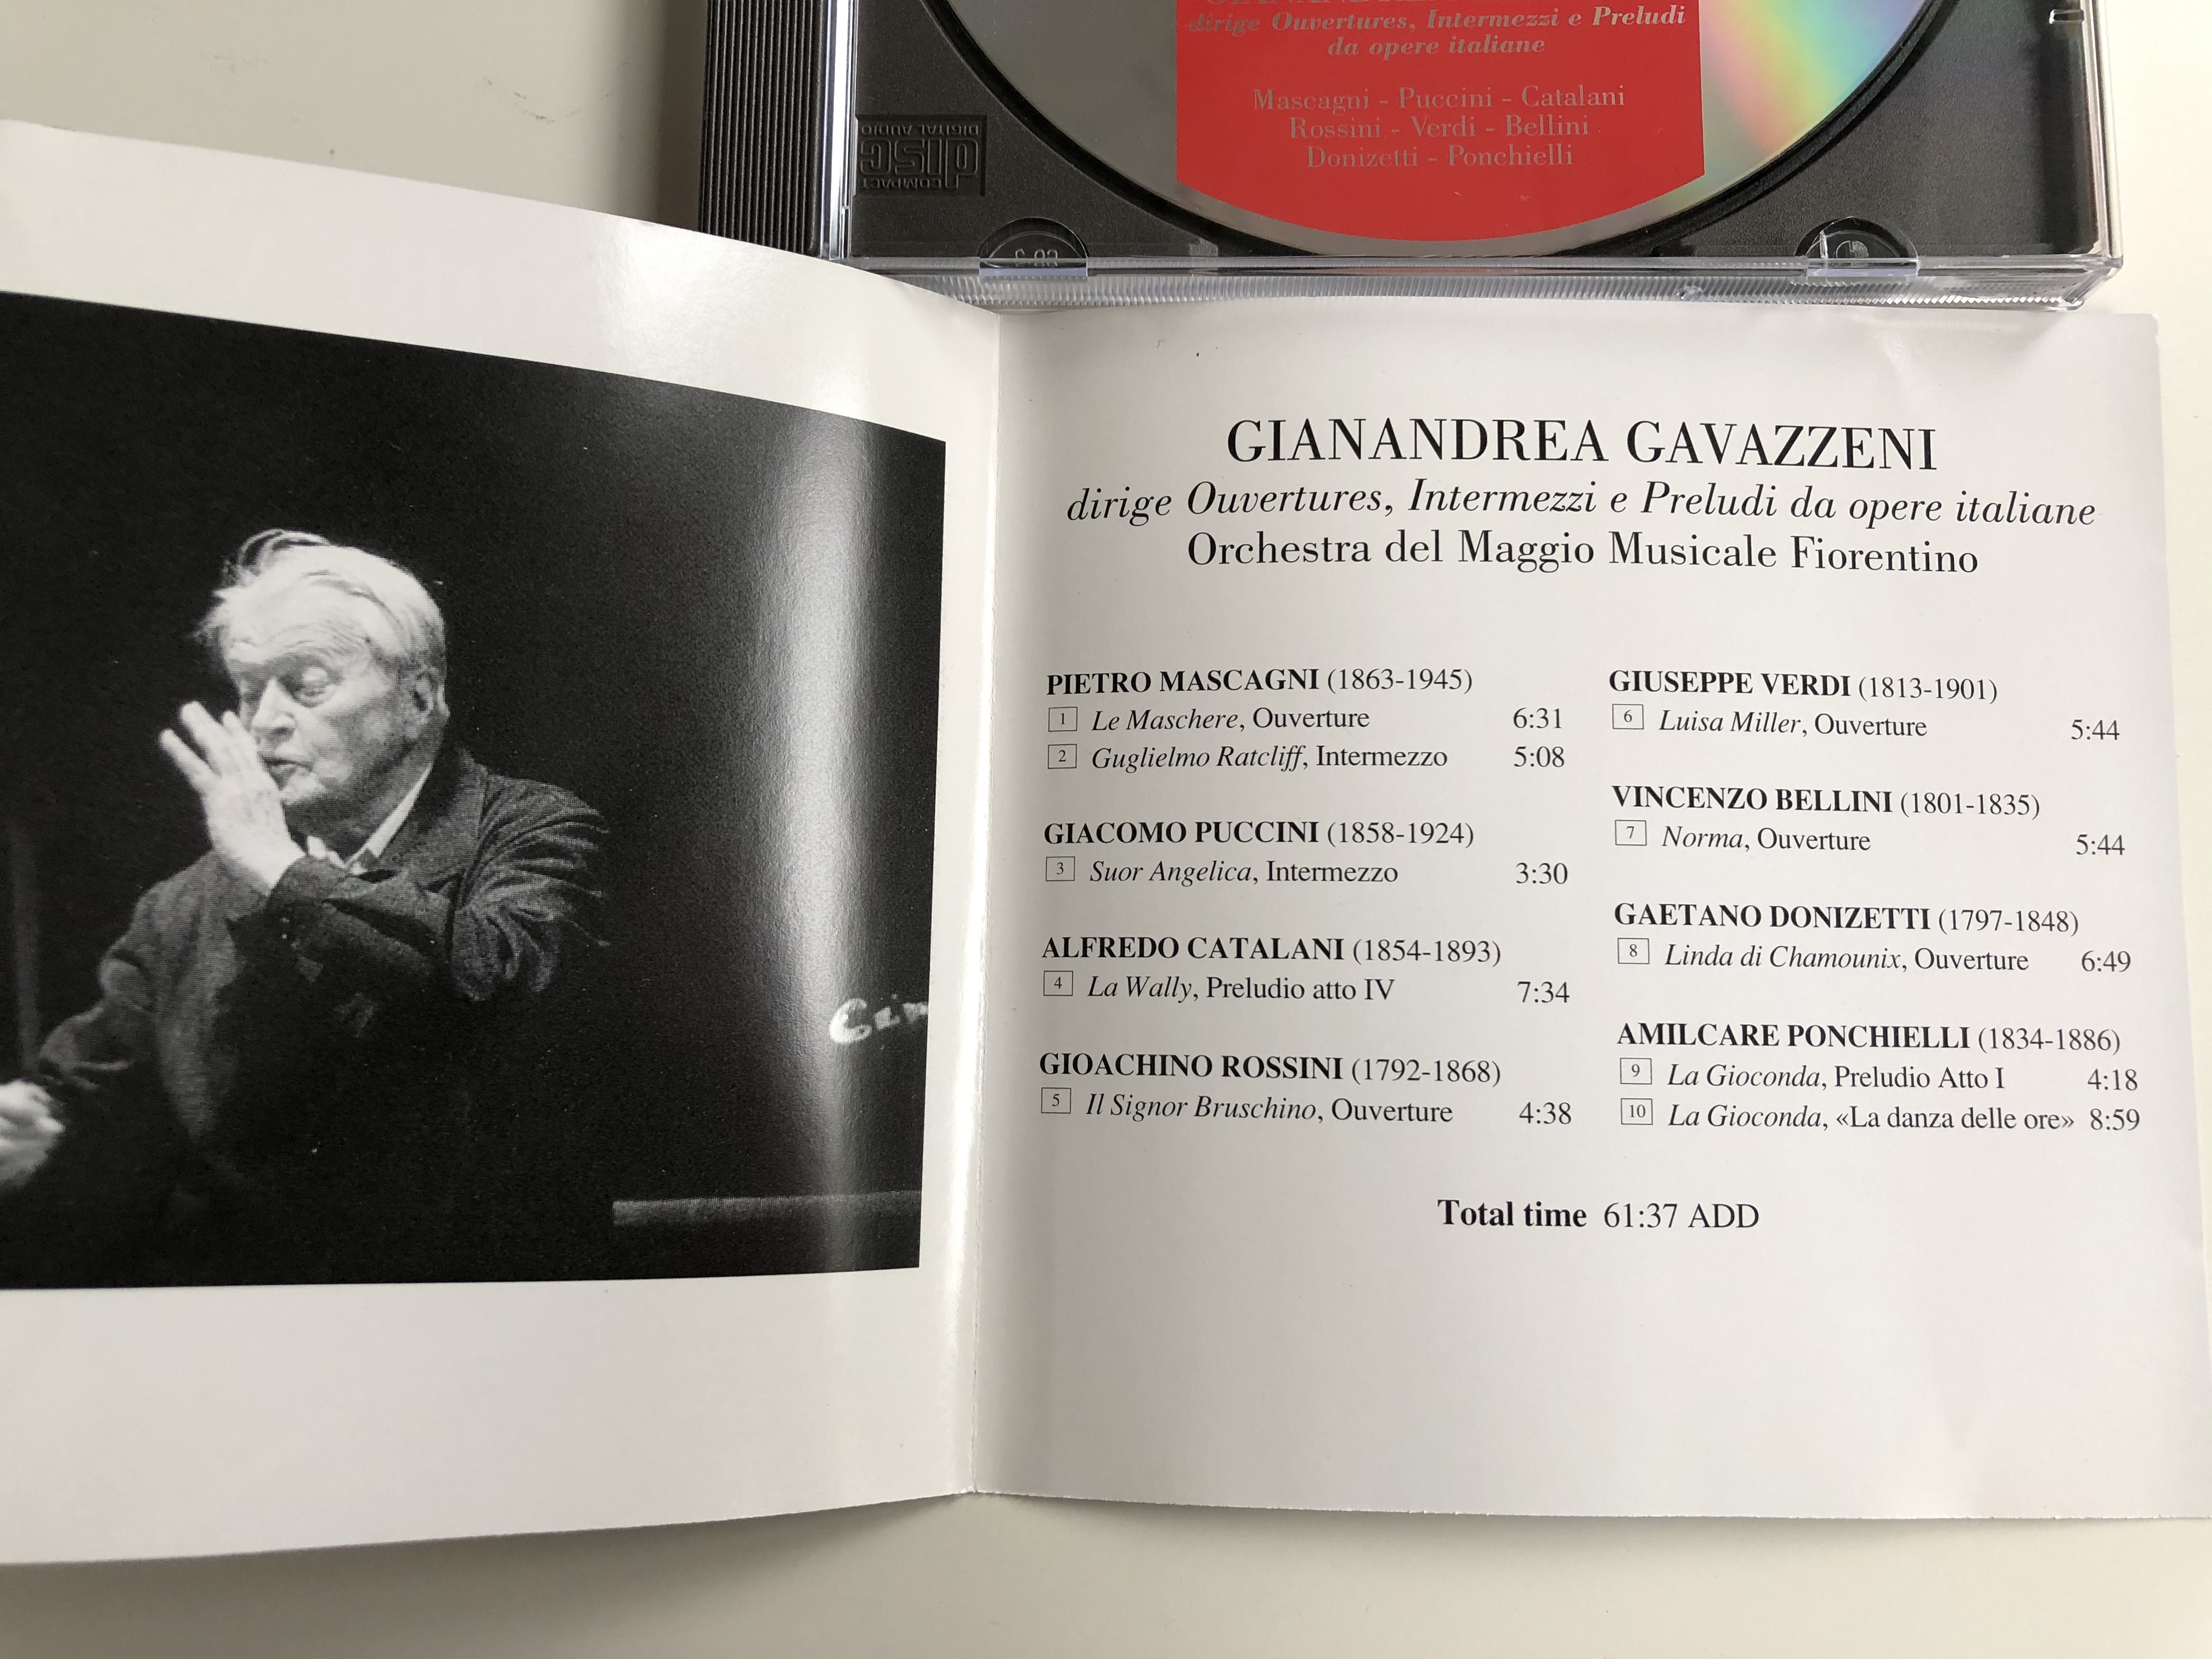 gianandrea-gavazzeni-ouvertures-intermezzi-preludi-mascagni-puccini-catalani-rossini-verdi-bellini-donizetti-ponchielli-orchestra-del-maggio-musicale-fiorentino-decca-audio-cd-1996-3-.jpg